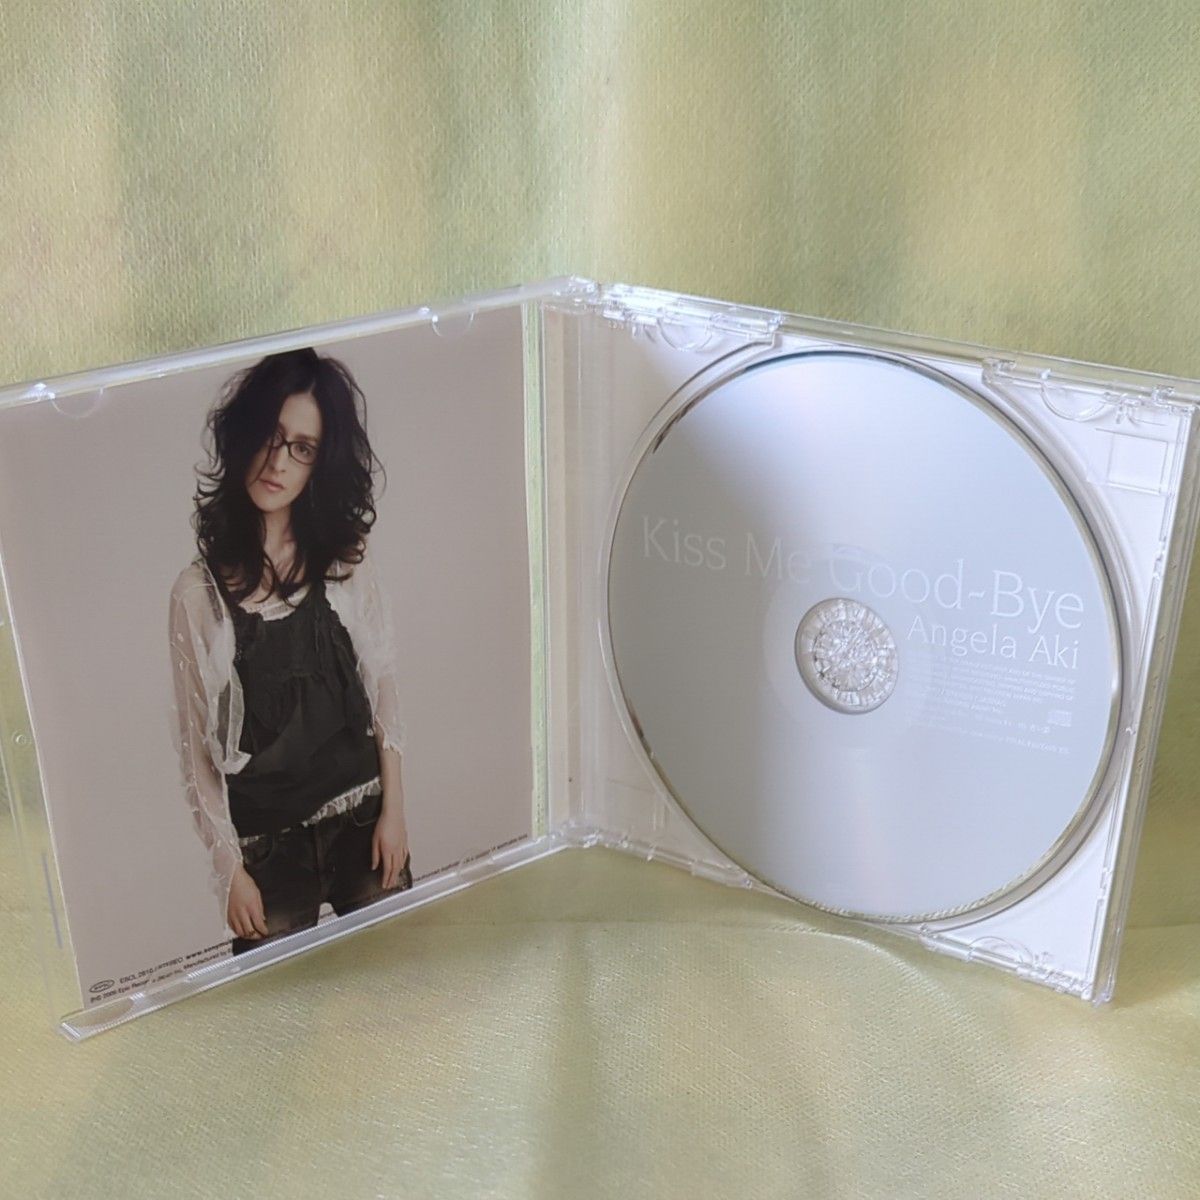 アンジェラ・アキ 中古CD 【Kiss Me Good-Bye】